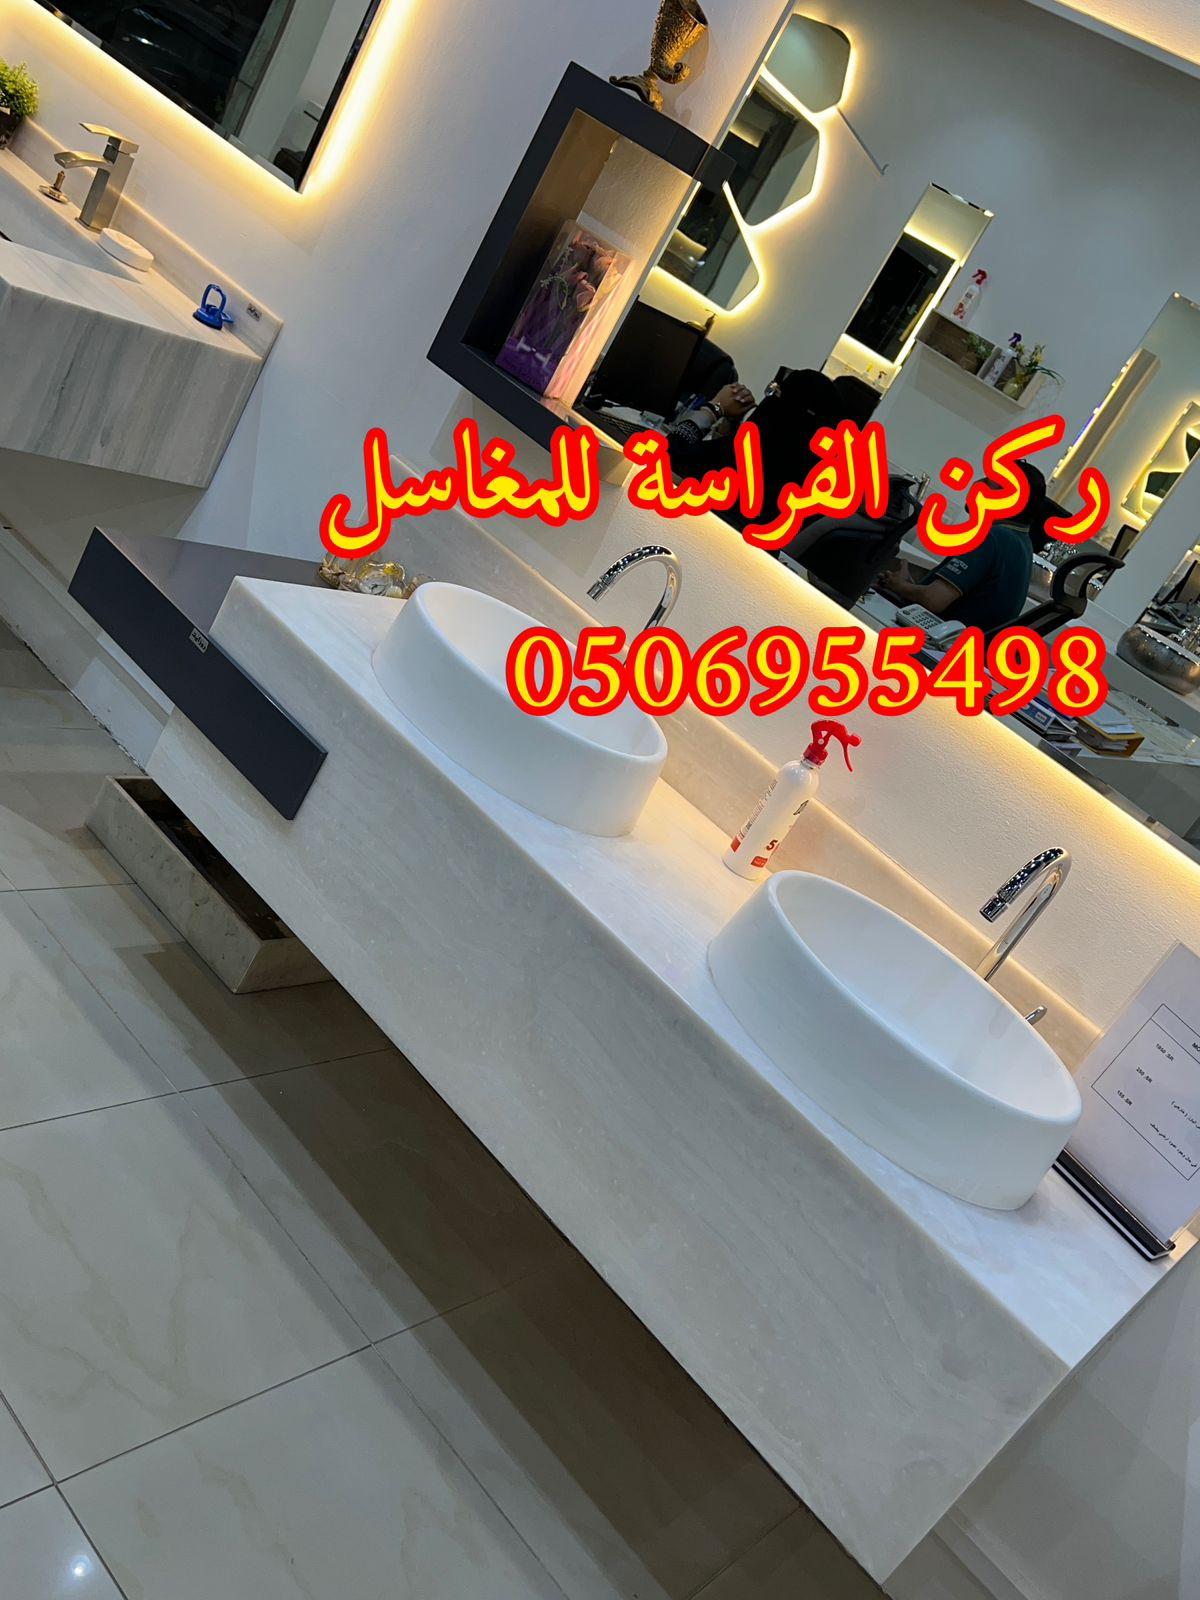 الرياض - ديكورات مغاسل حمامات رخام في الرياض,0506955498 561259266